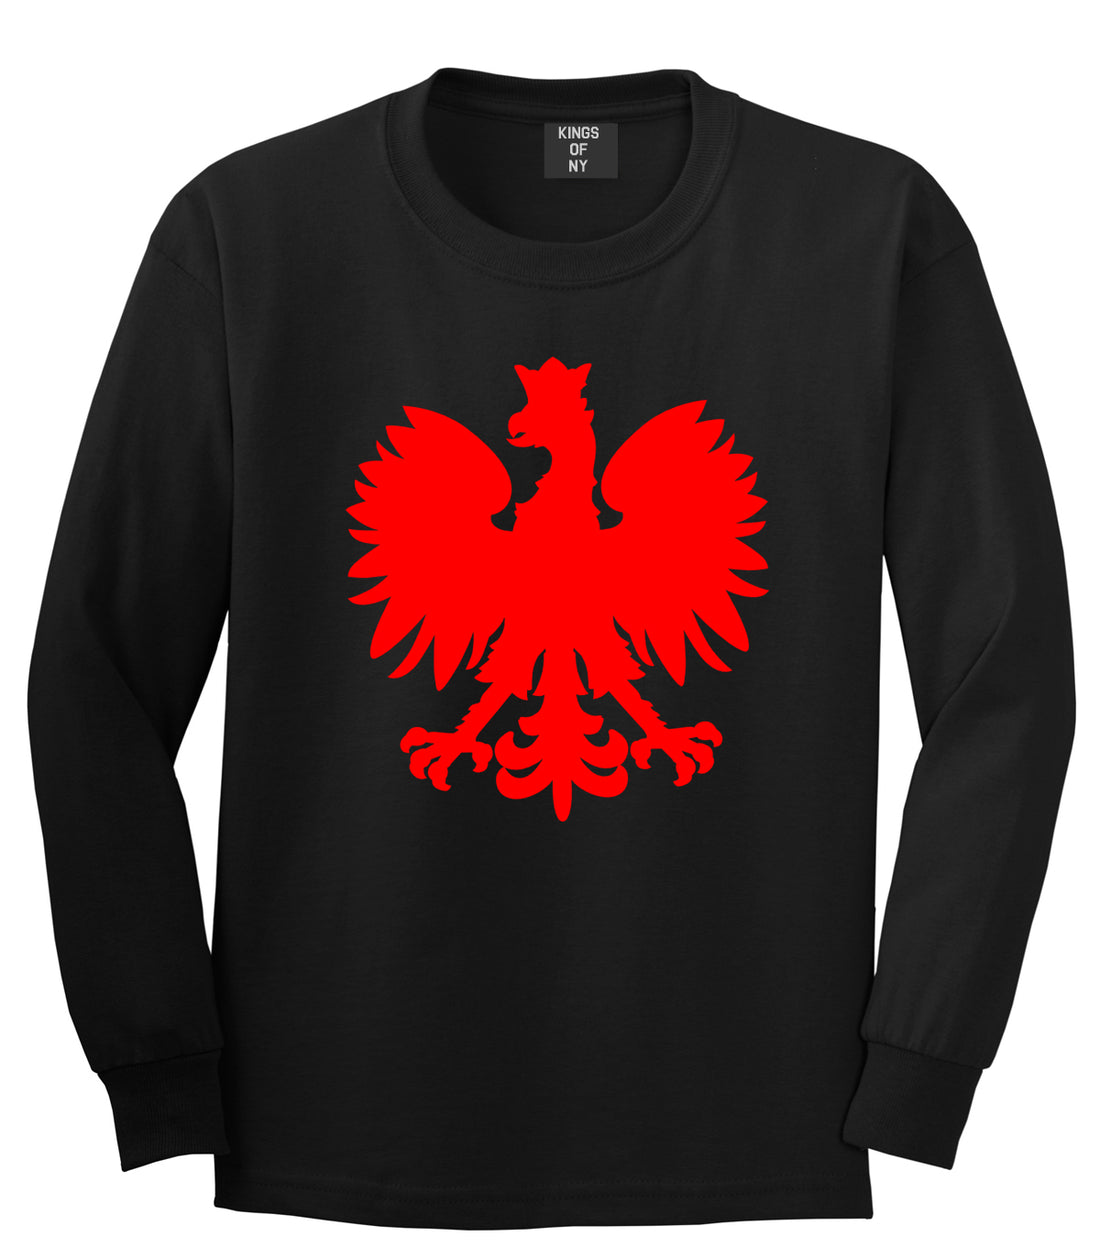 Polish Pride Polish Eagle' Men's T-Shirt